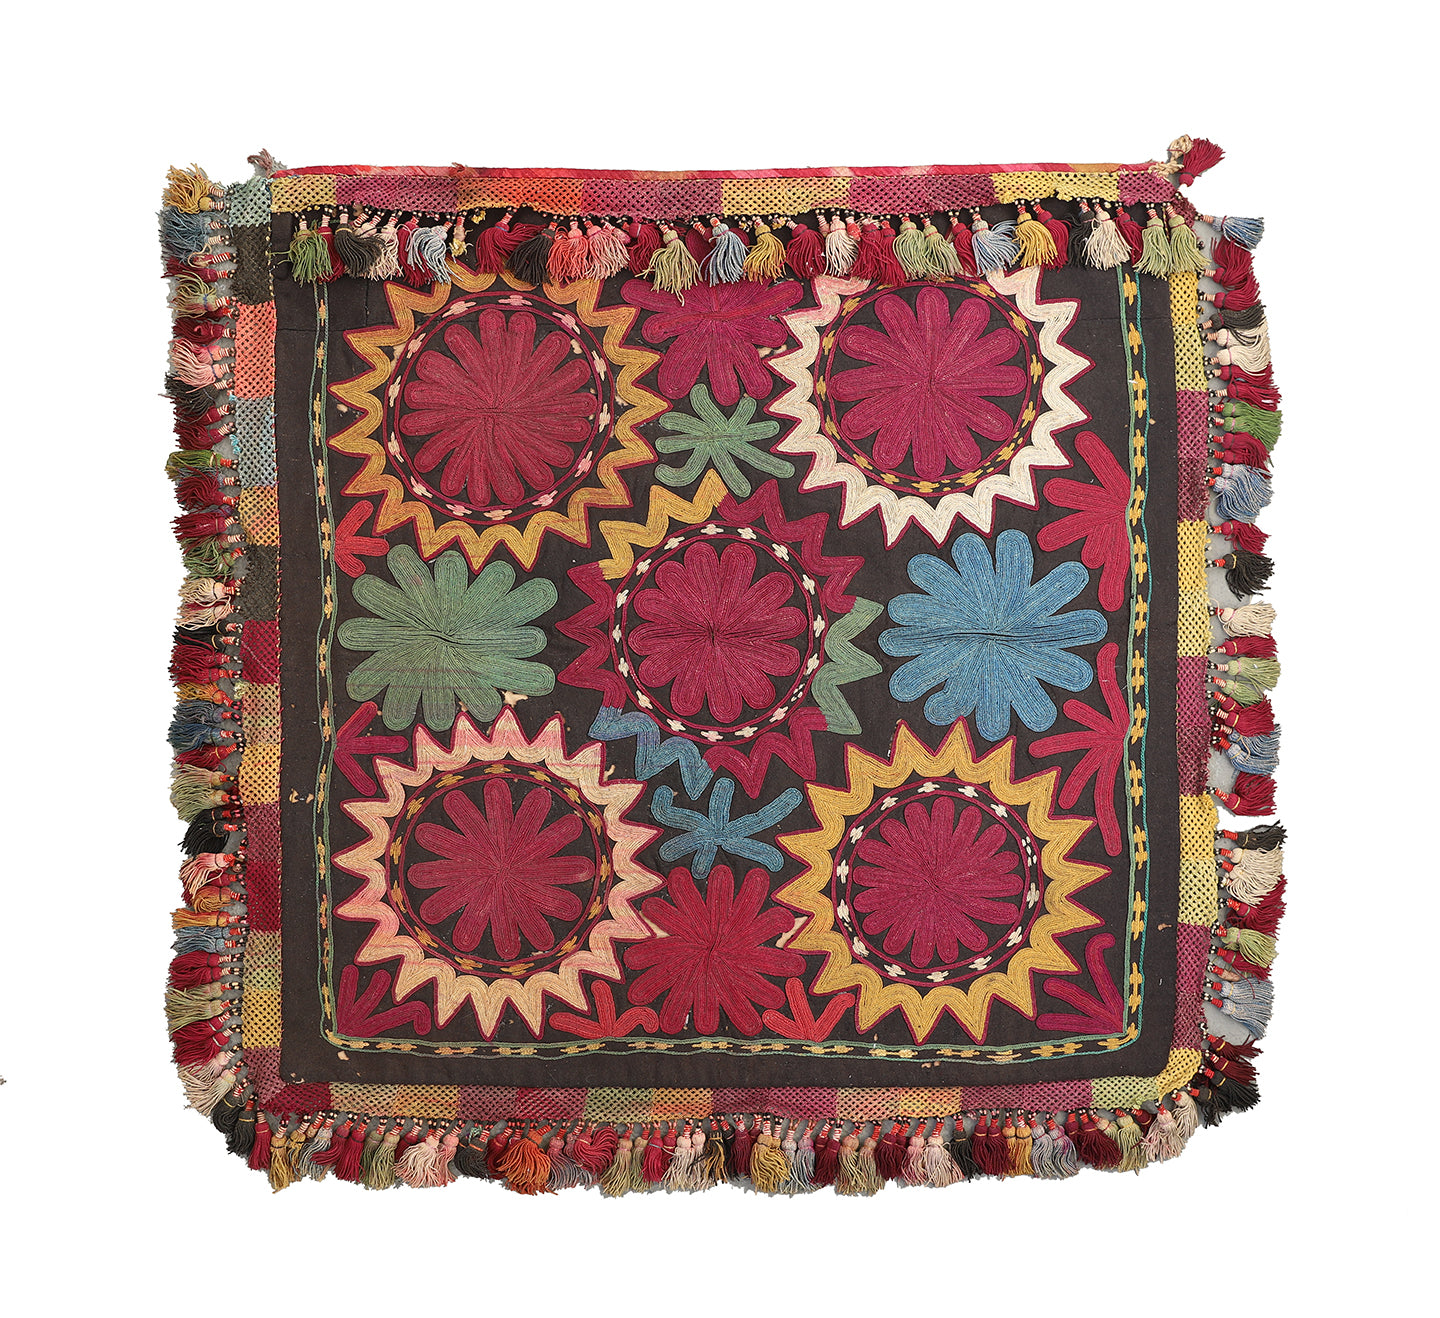 2'x2' Antique Collectable Afghan Uzbek Decorative Textile